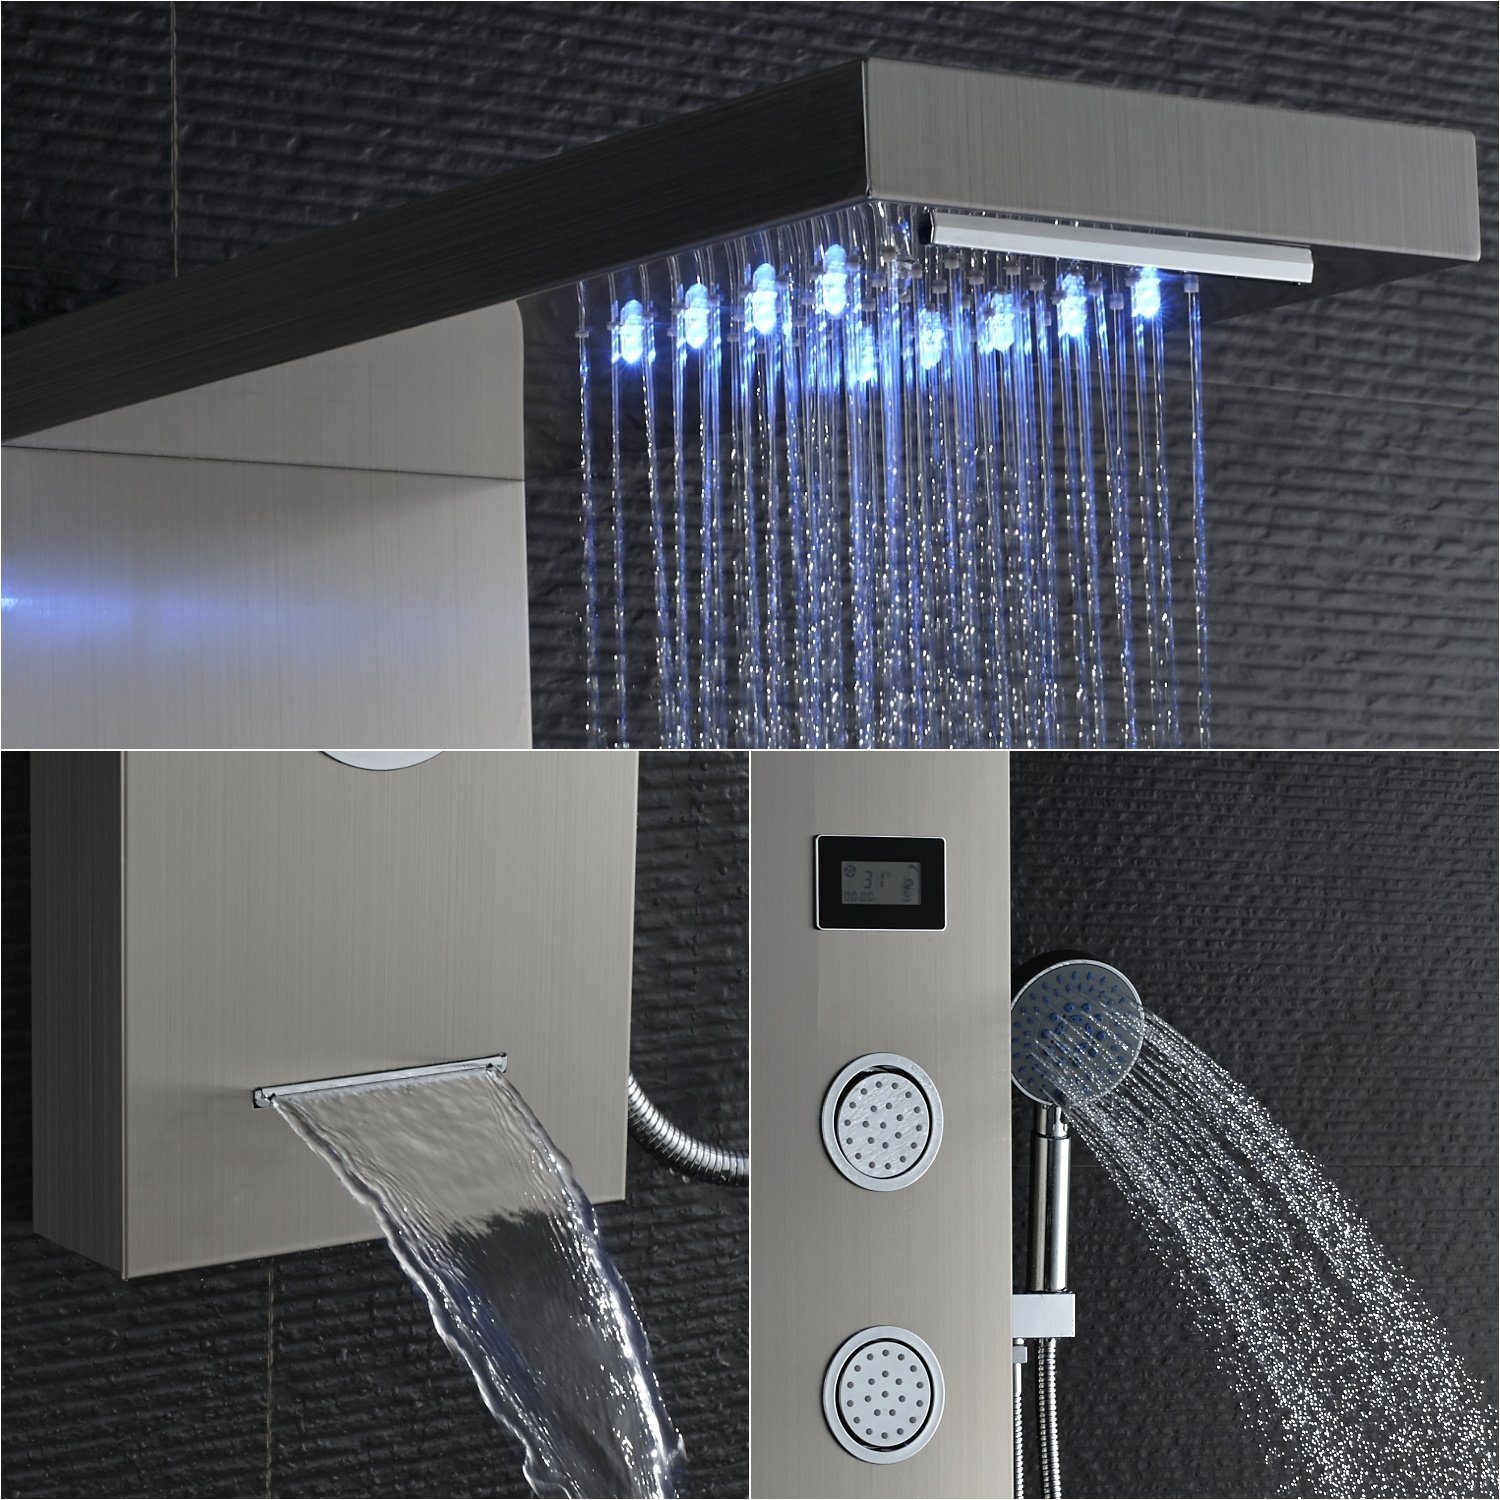 Duschsystem Duschset, Auralum LED Duschpaneel Badezimmer mit Wassertemperatur-Display Handbrause, 5-Funktion Duschsäule Edelstahl Dusch